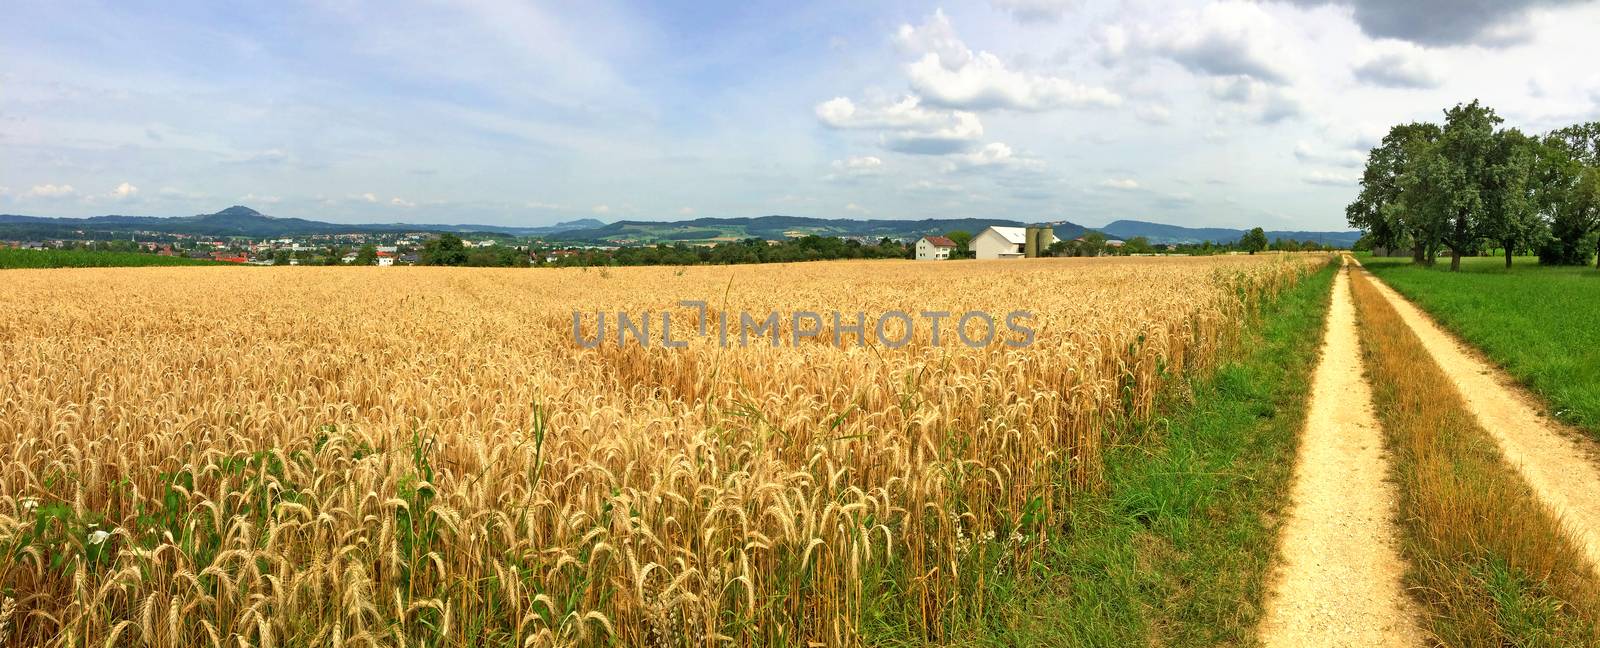 field of ripe rye with blue sky by Jochen